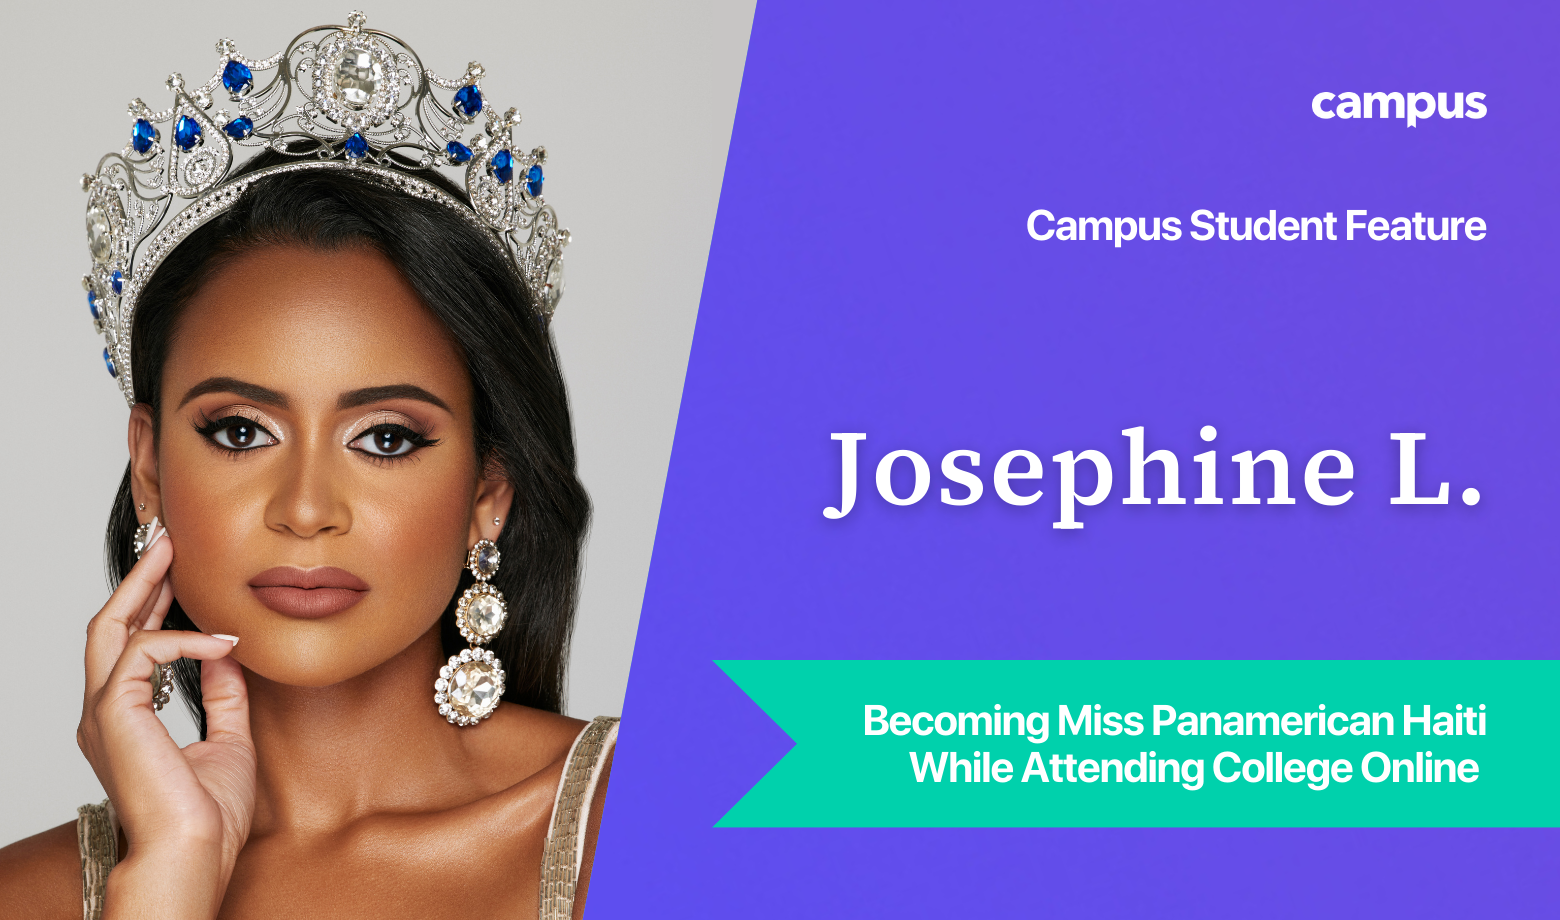 Campus Student Feature: Josephine Lentner, Miss Panamerican Haiti 2022